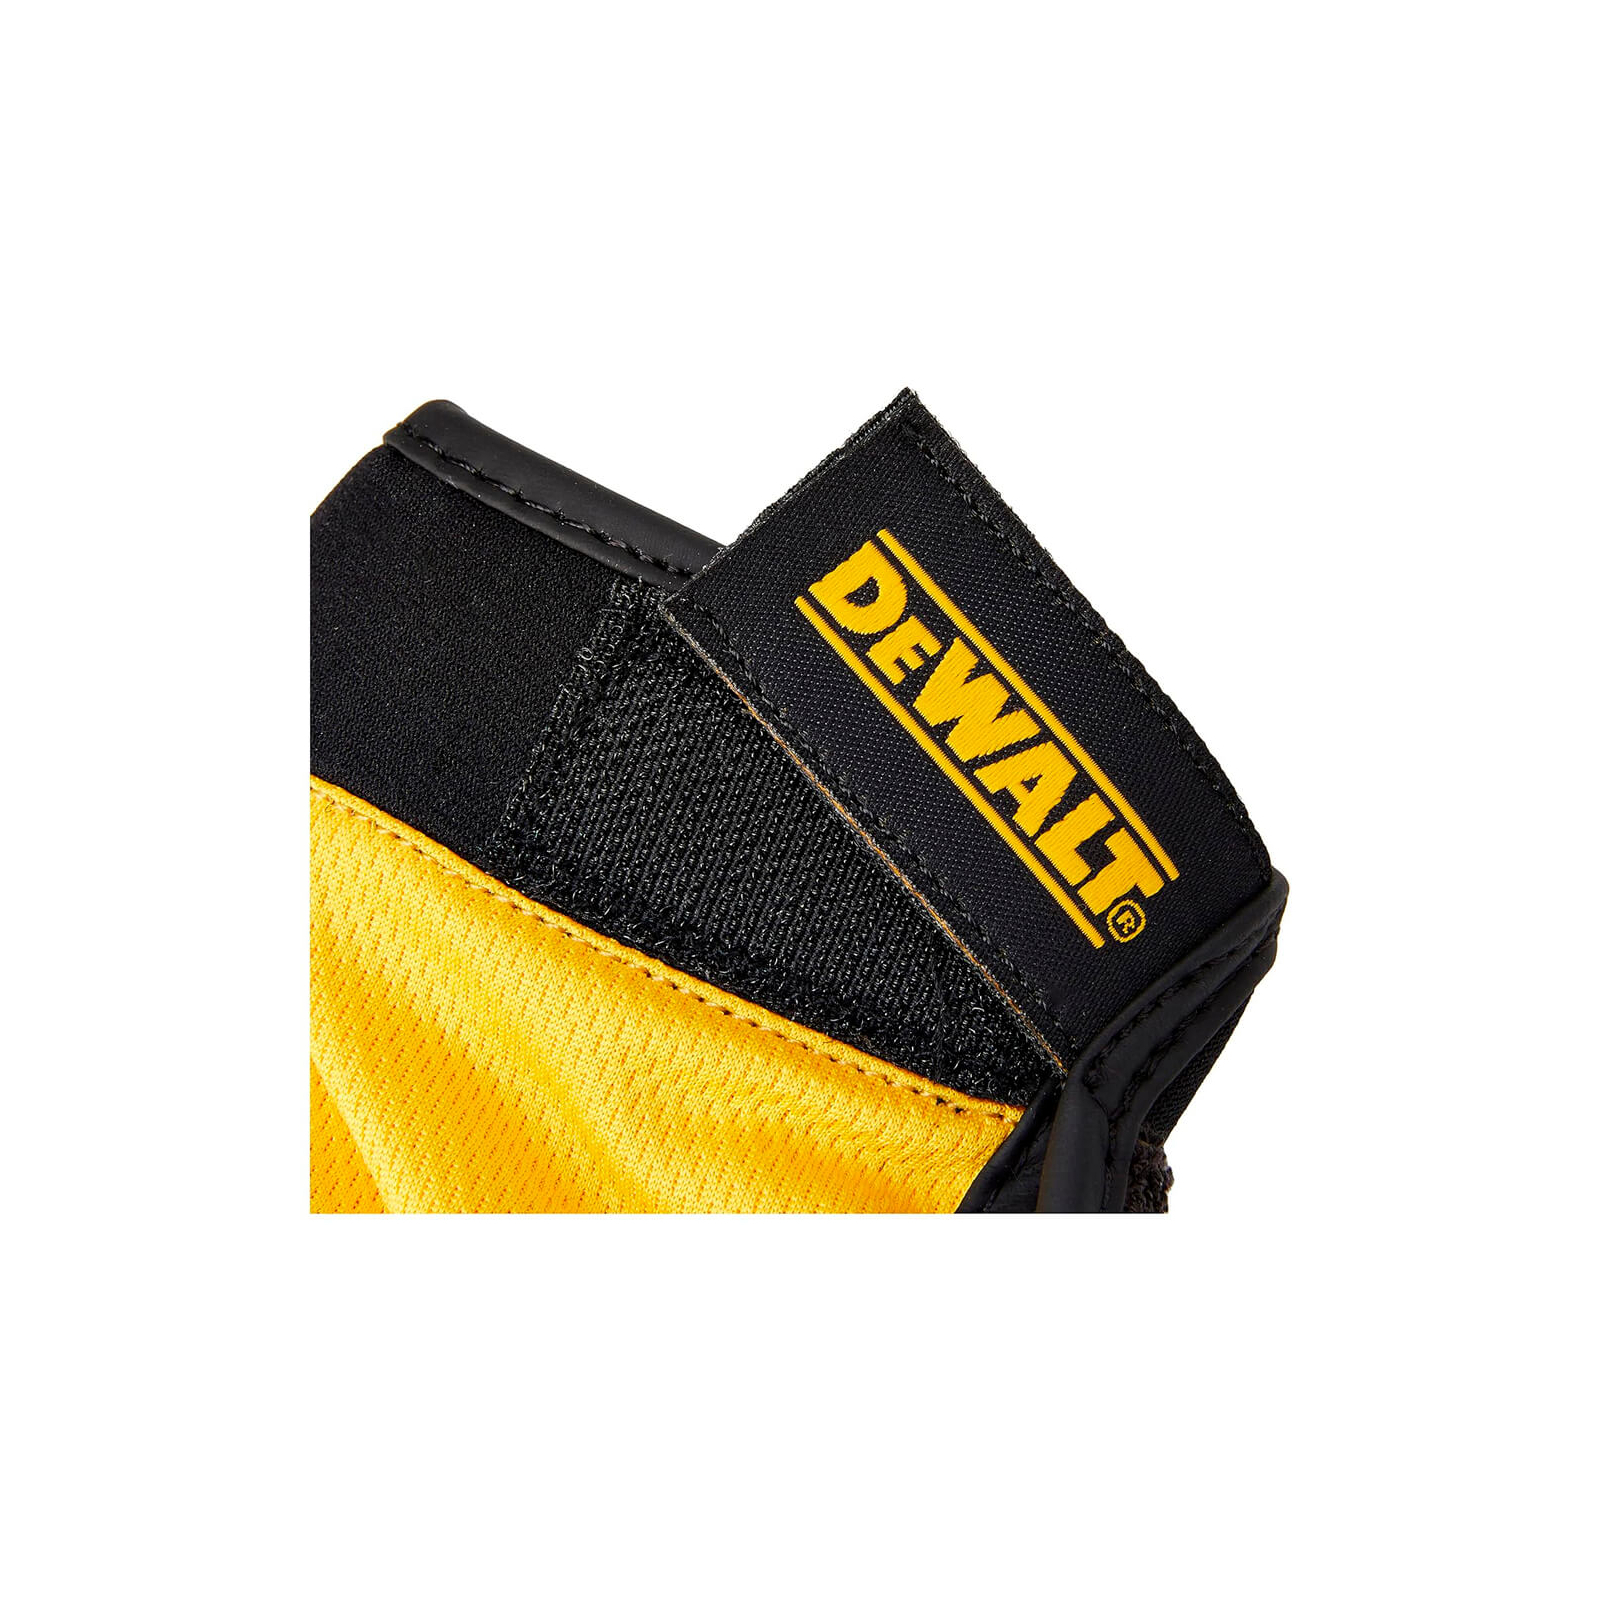 Защитные перчатки DeWALT частично открытые, разм. L/9, с накладками на ладони (DPG214L) изображение 4